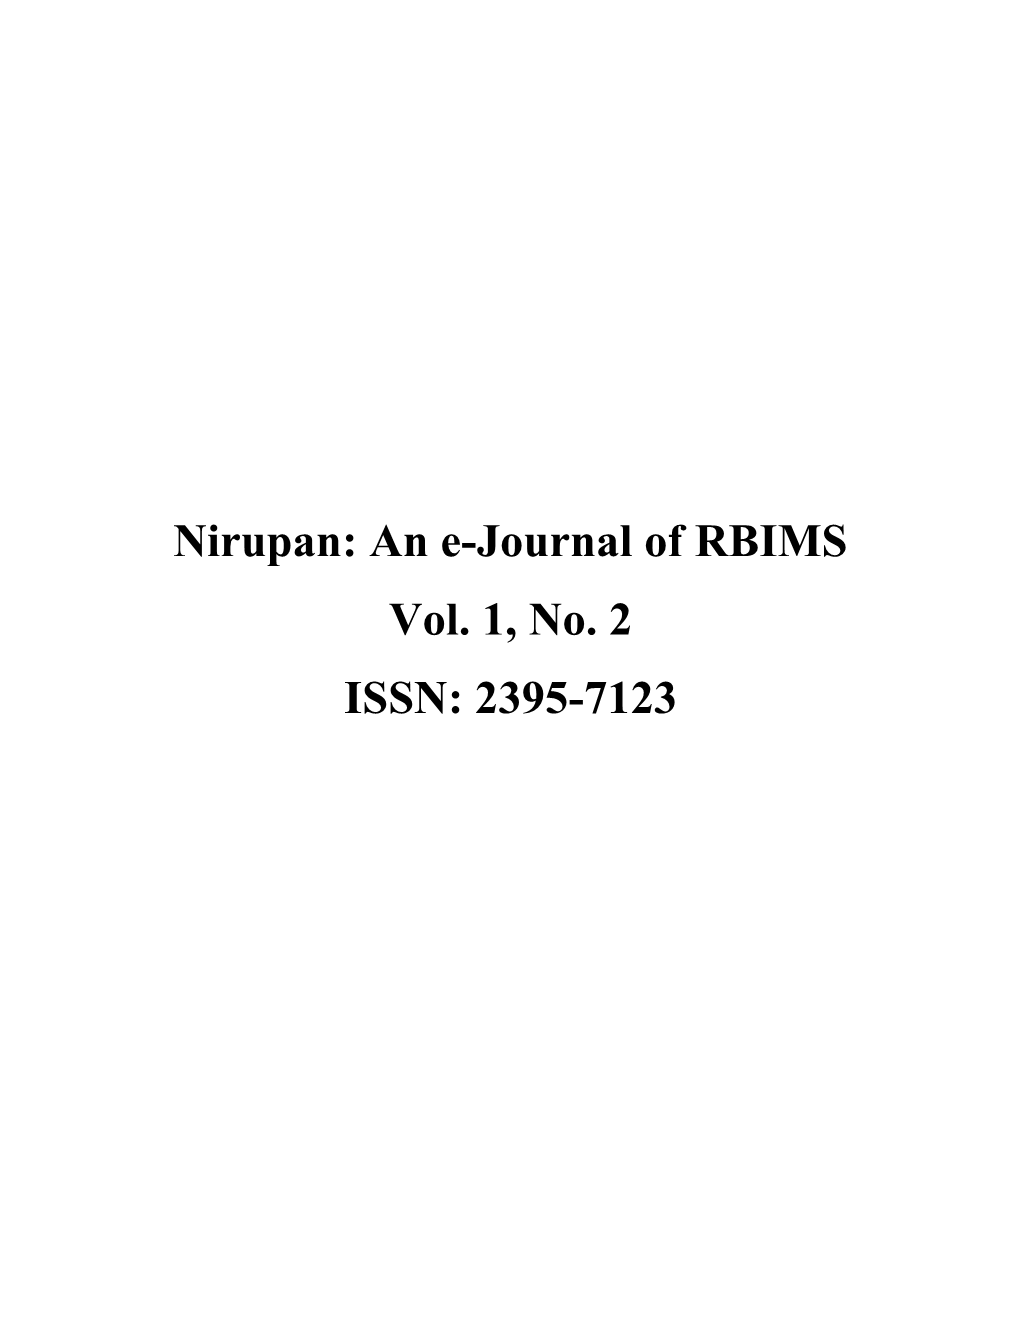 Nirupan: an E-Journal of RBIMS Vol. 1, No. 2 ISSN: 2395-7123 Nirupan: an E-Journal of RBIMS Vol